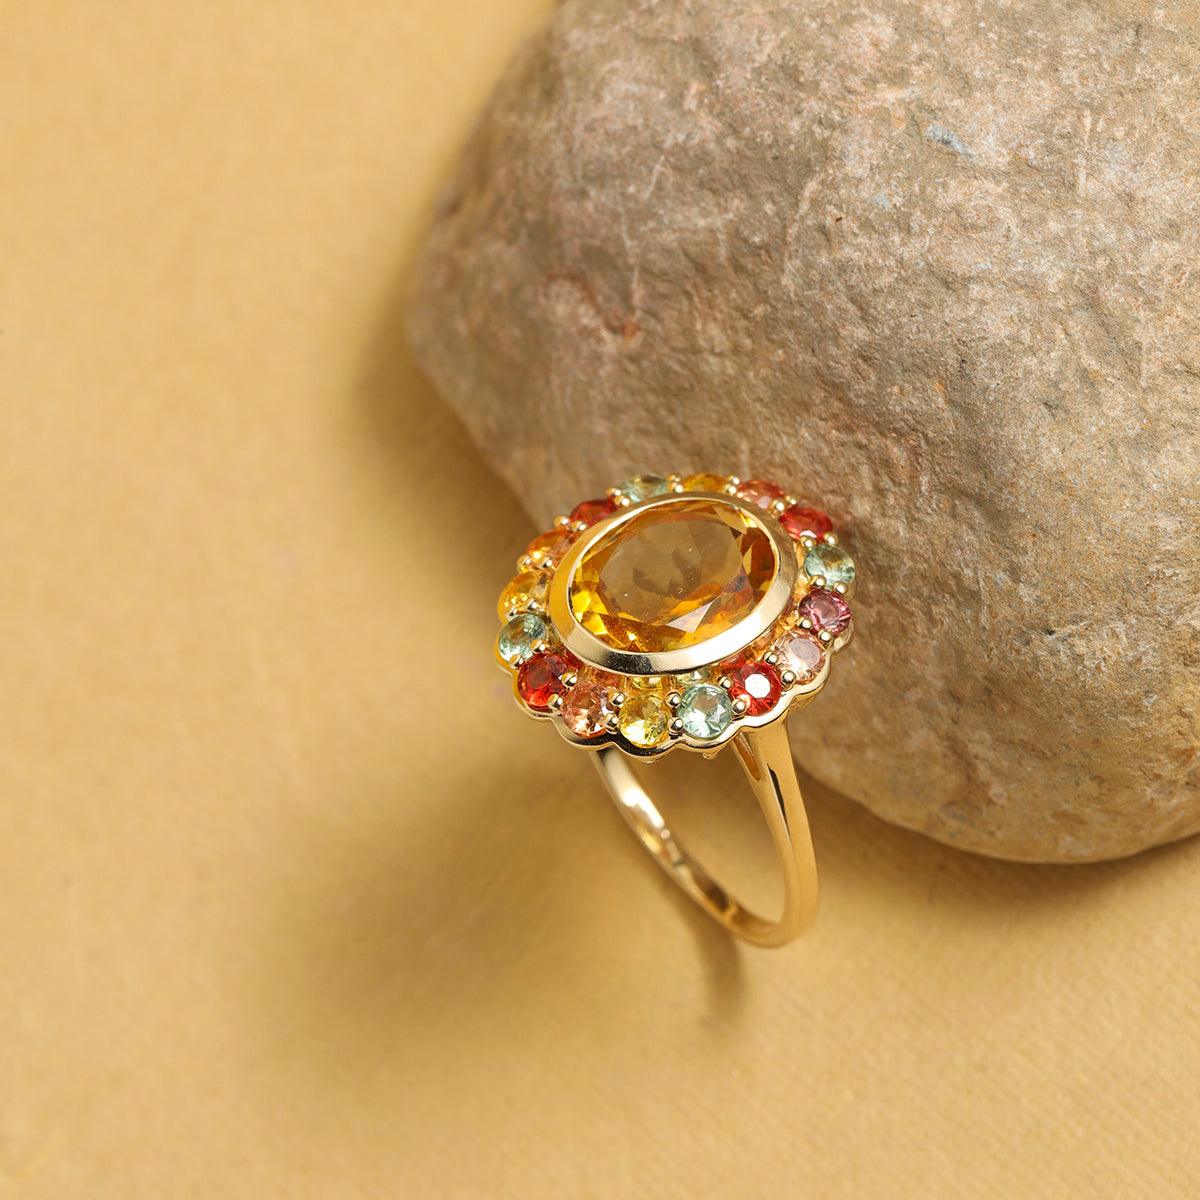 4.14 Ct. Citrine Multi Sapphire Cluster Ring 14K Yellow Gold Jewelry - YoTreasure